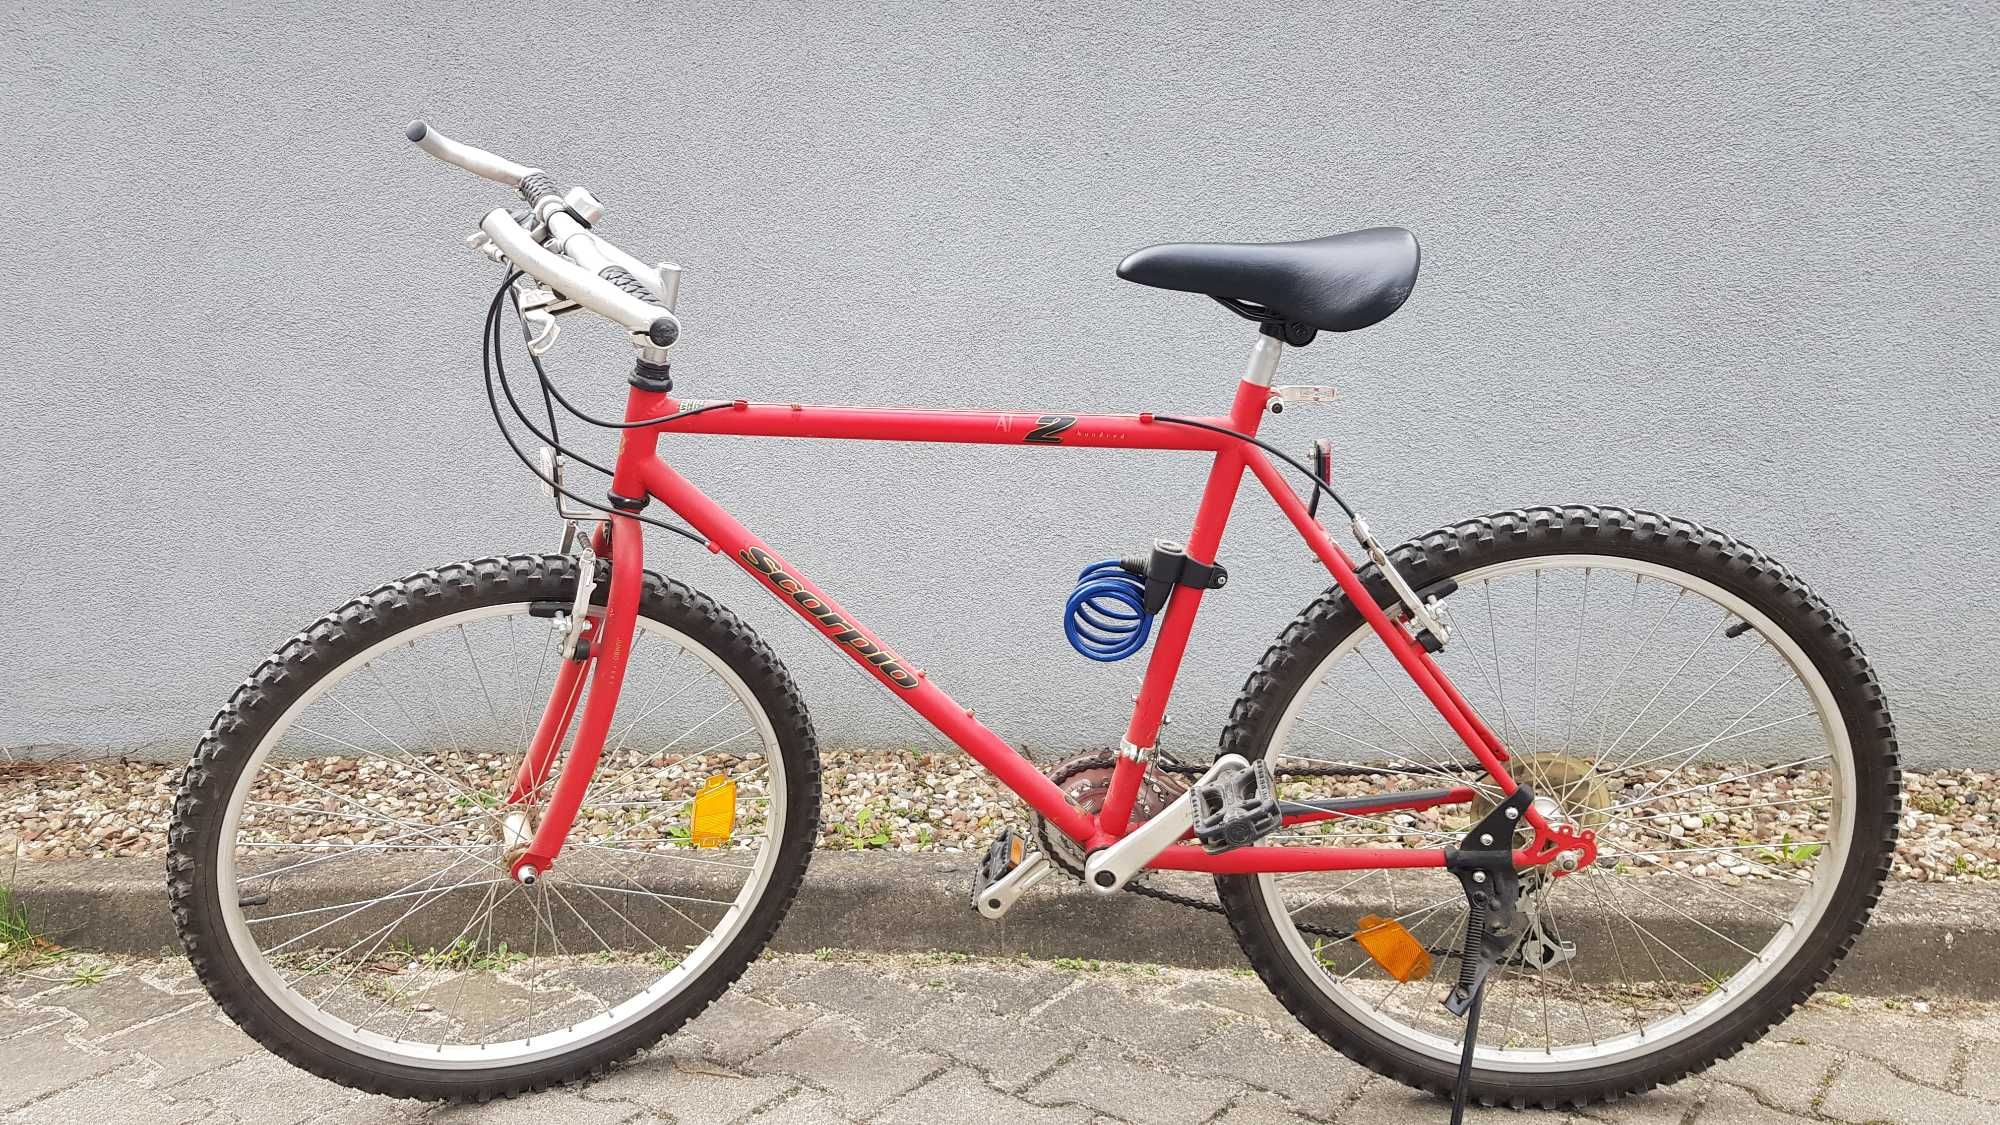 Efektowny czerwony rower Scorpio, koła Kenda 26 cali, Gdańsk